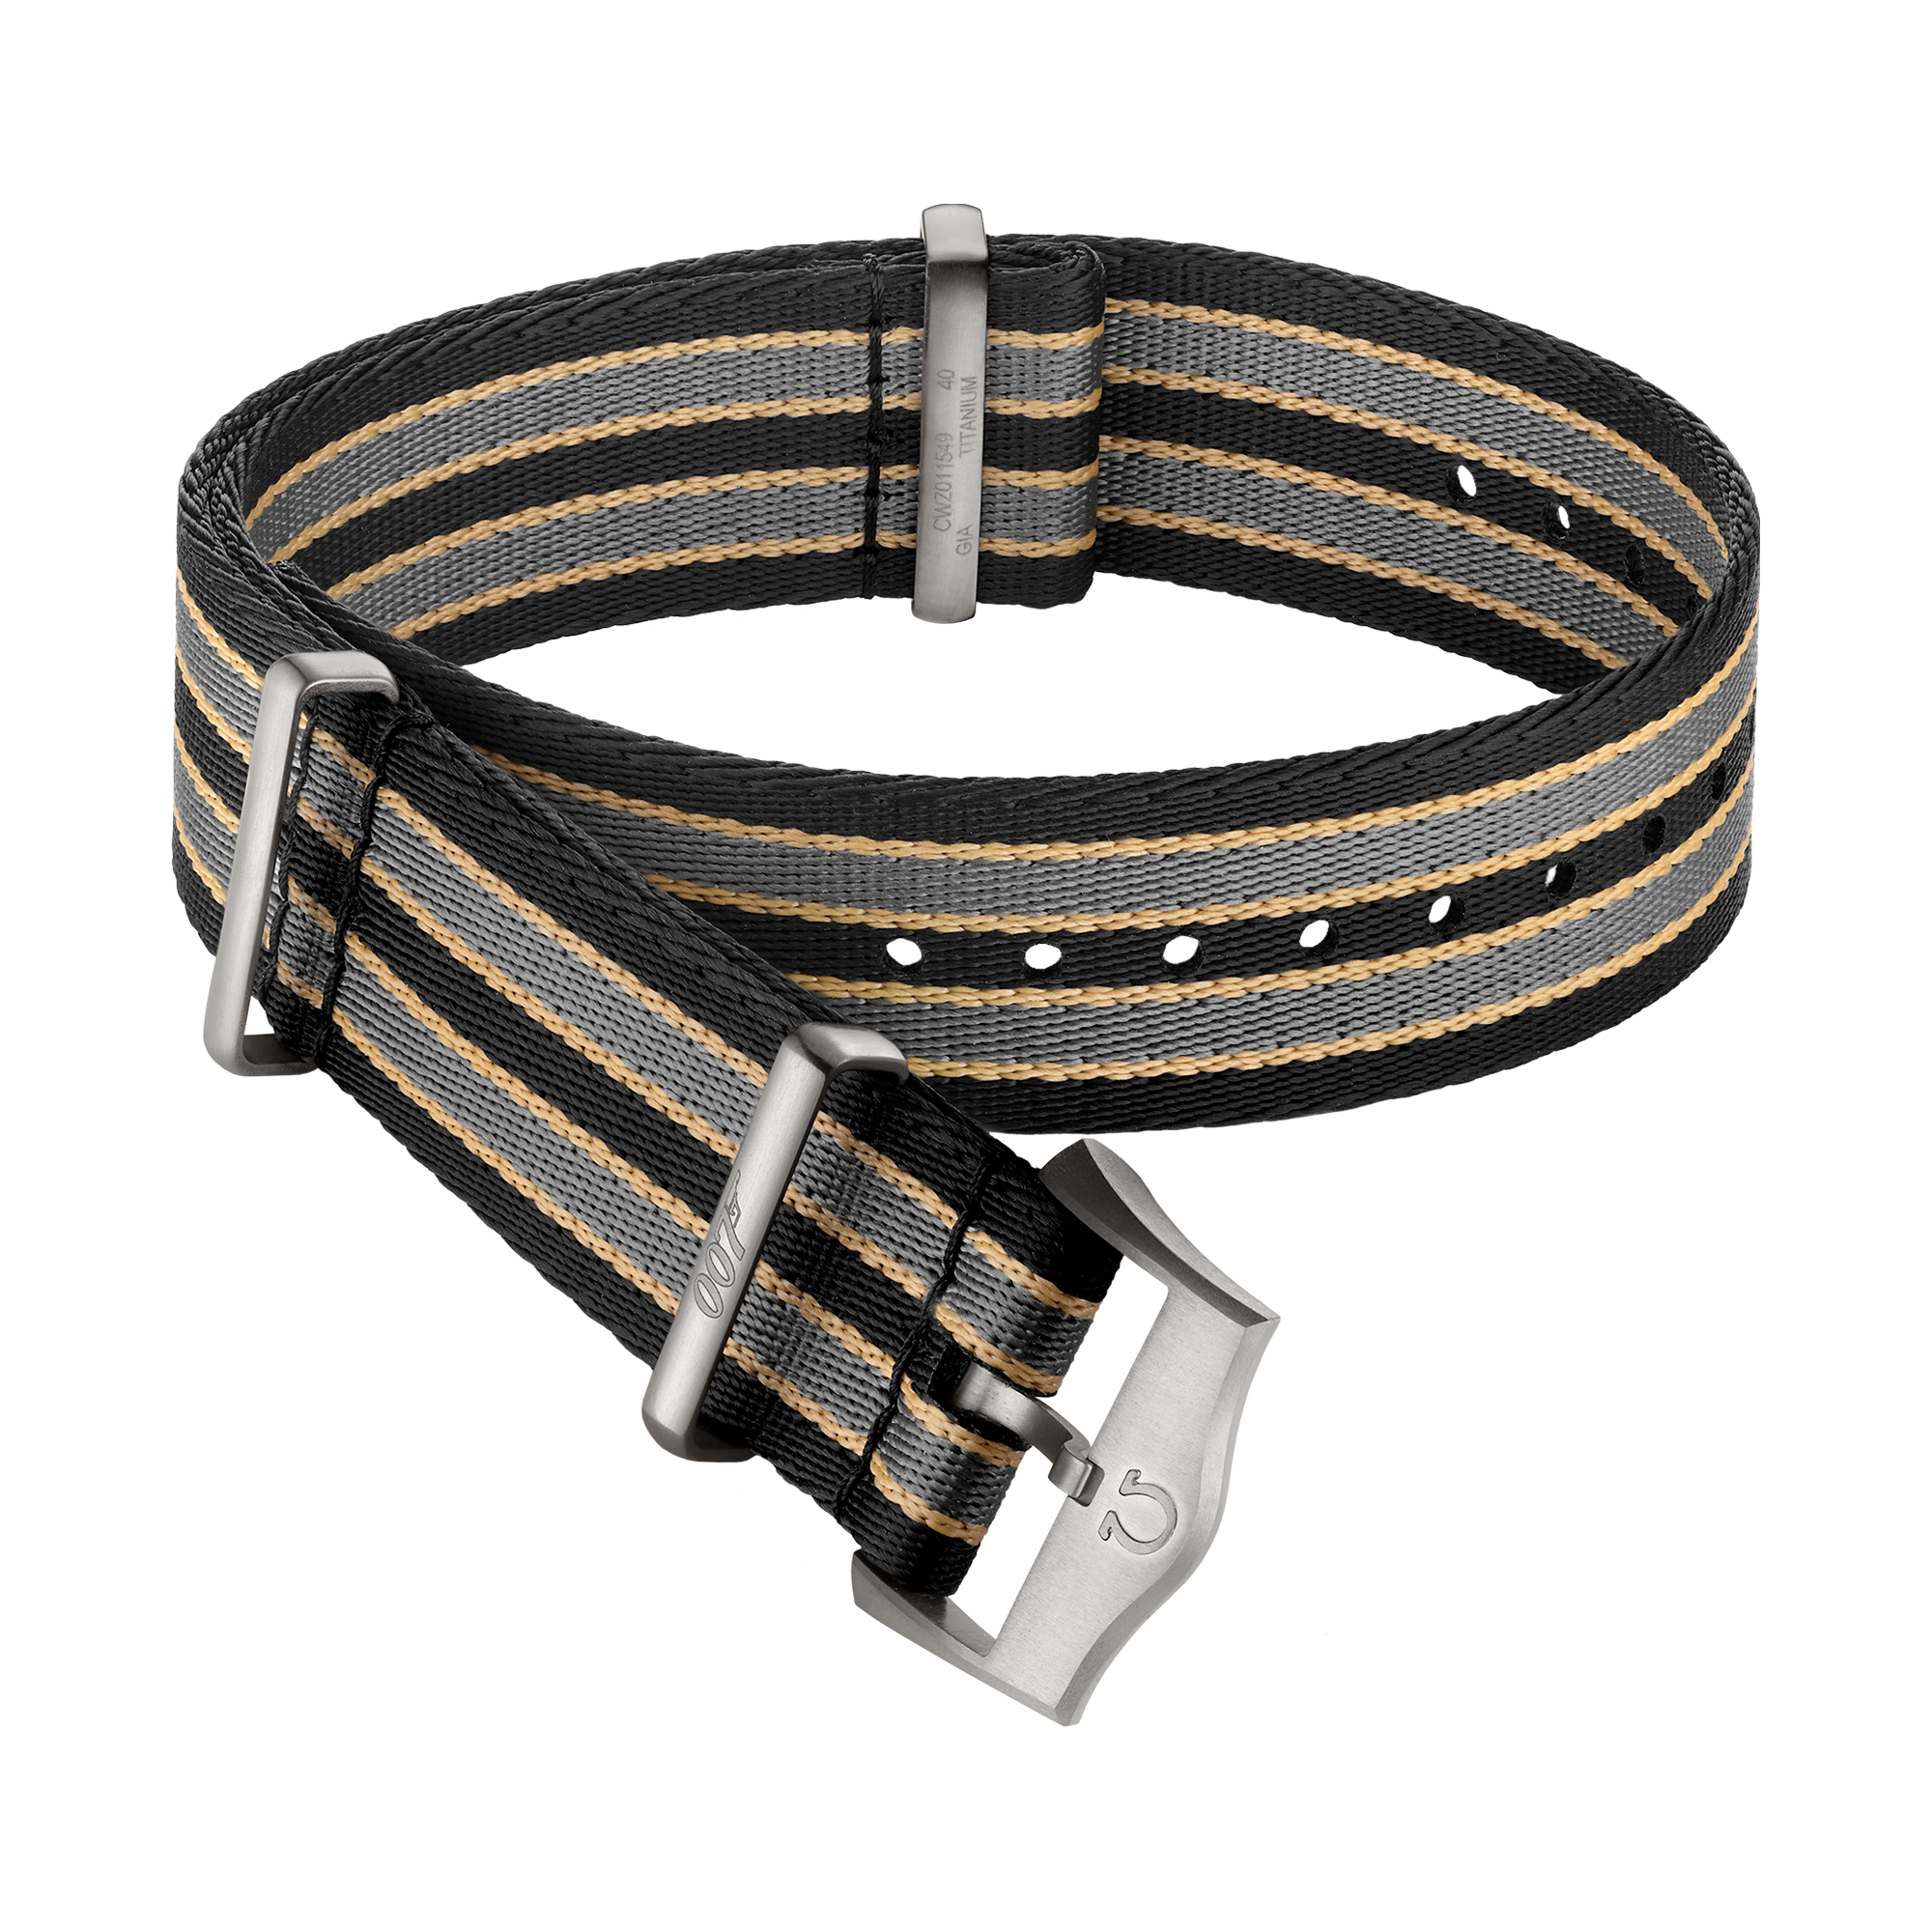 Bracelet NATO - Bracelet en polyamide rayé brun foncé, gris et beige - 031CWZ014739